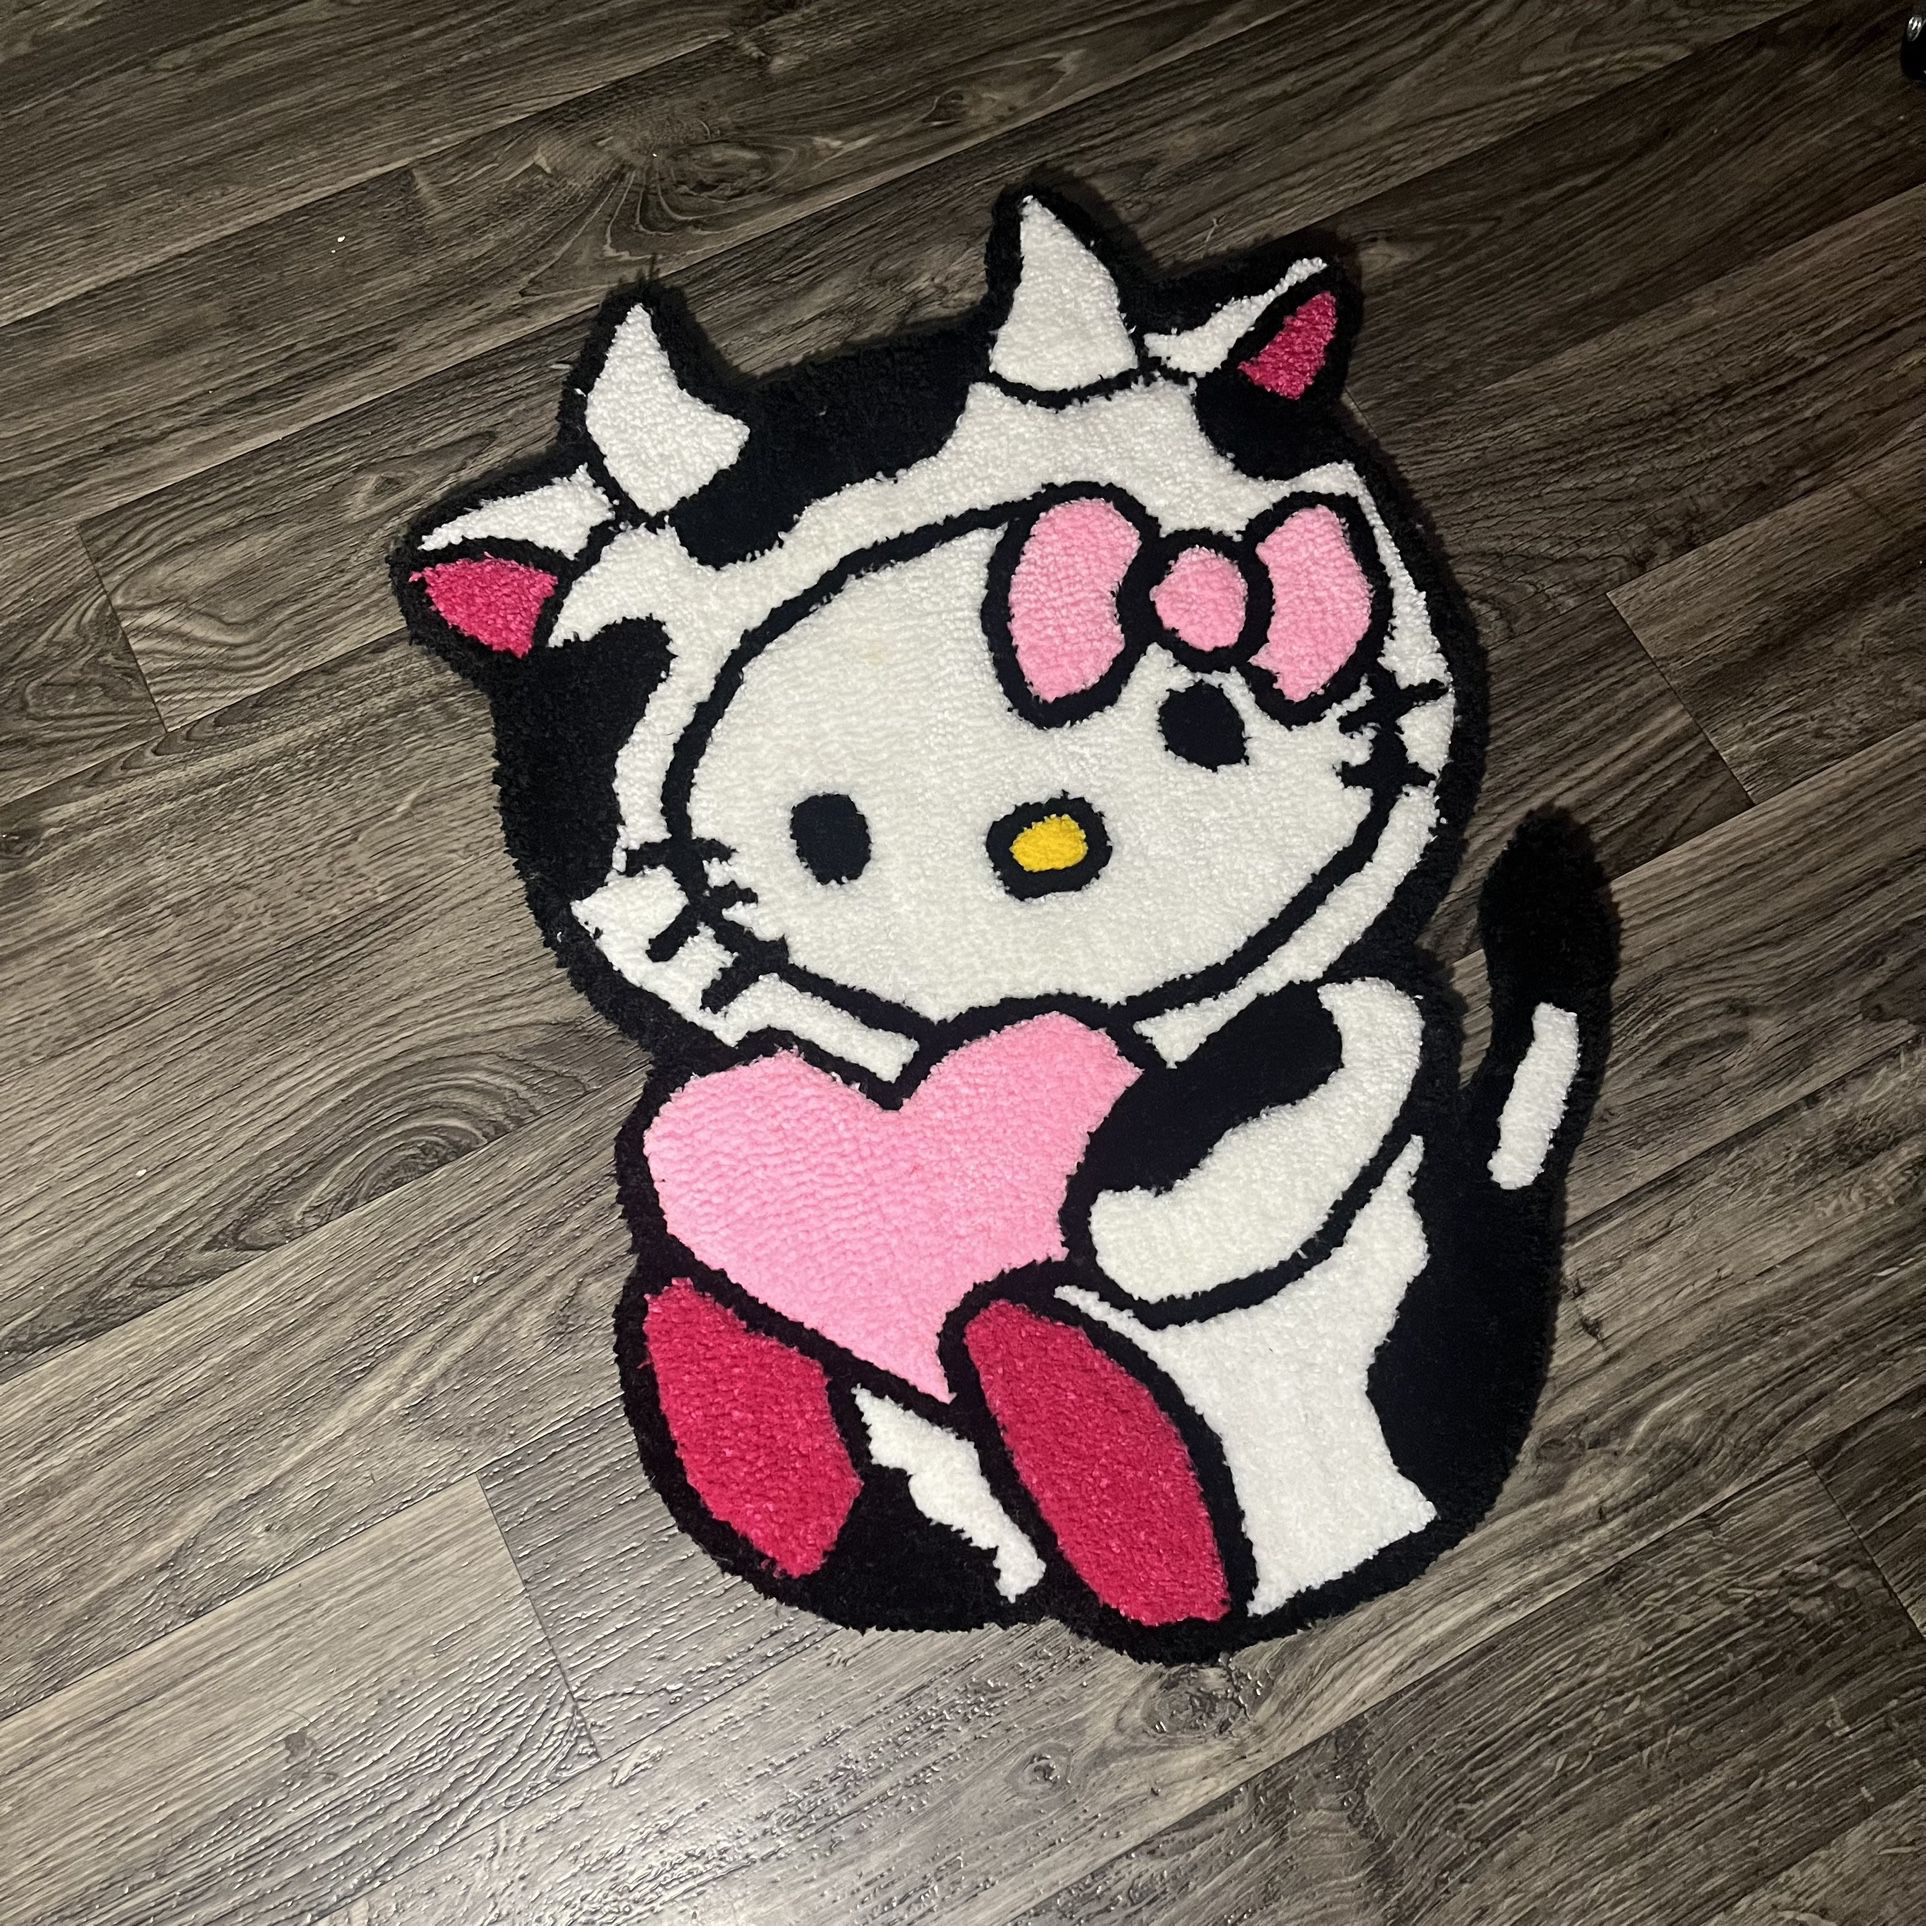 Moo Cow Hello Kitty Rug